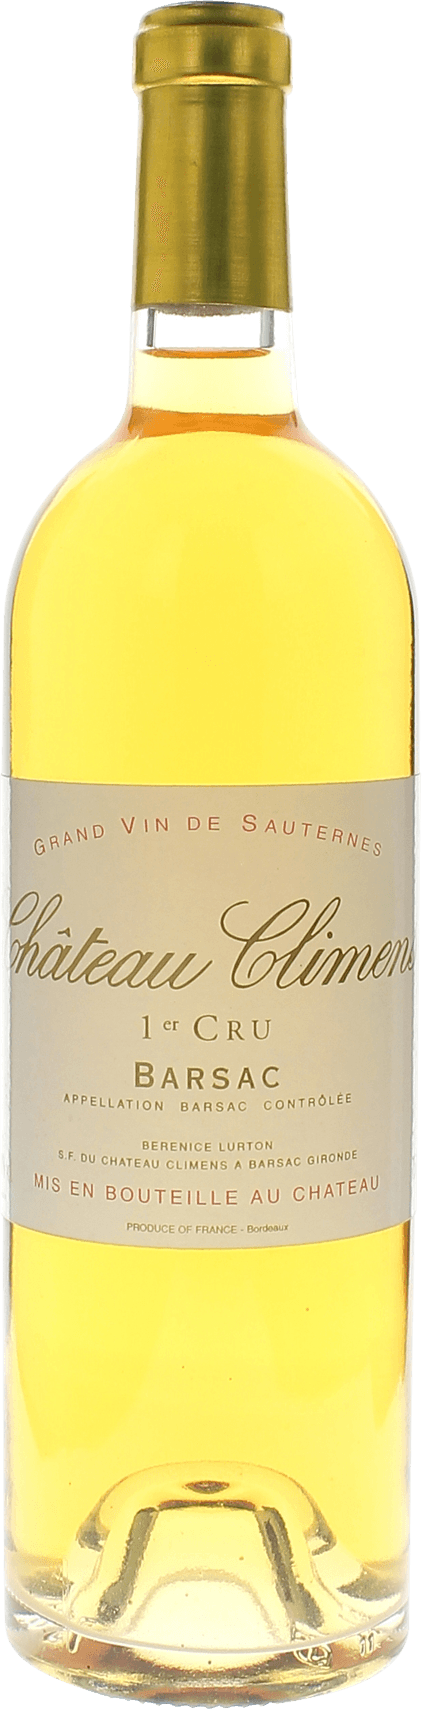 Climens 1955 1er cru Sauternes Barsac, Bordeaux blanc